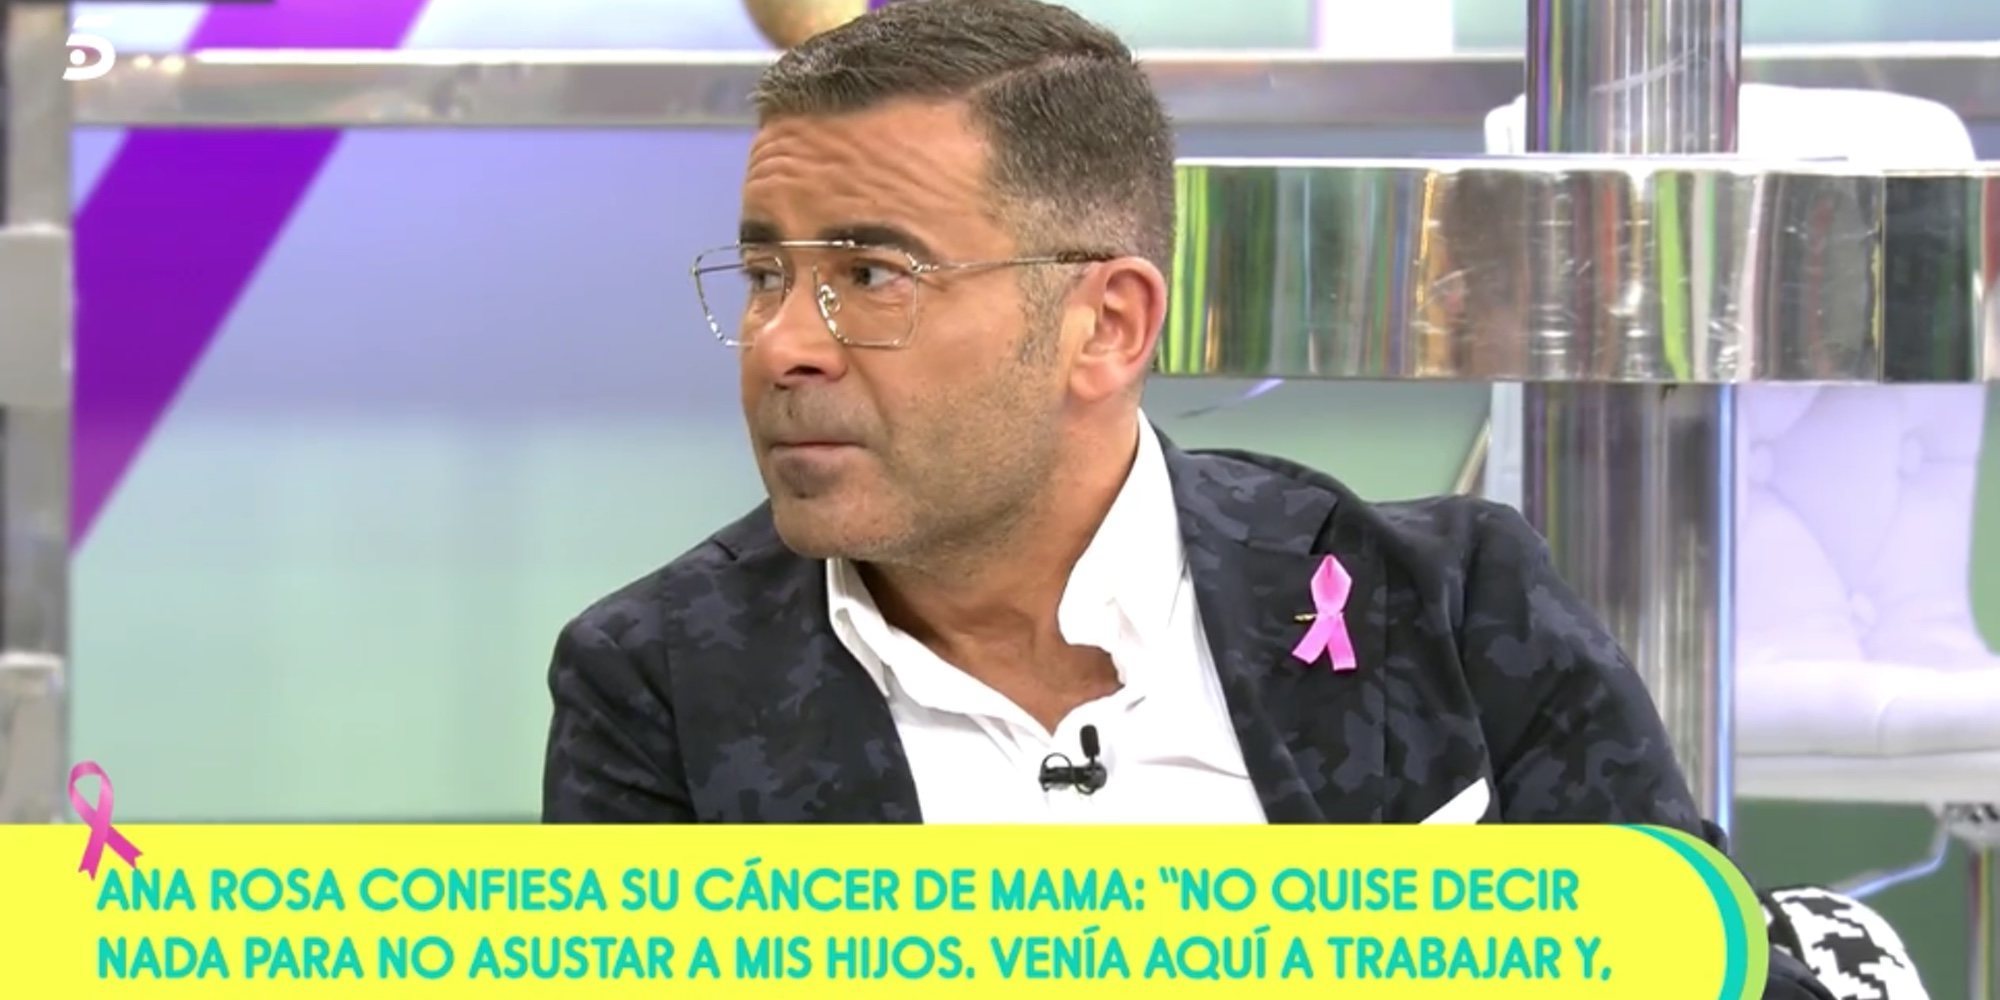 Jorge Javier Vázquez alaba a Ana Rosa Quintana por su confesión sobre el cáncer